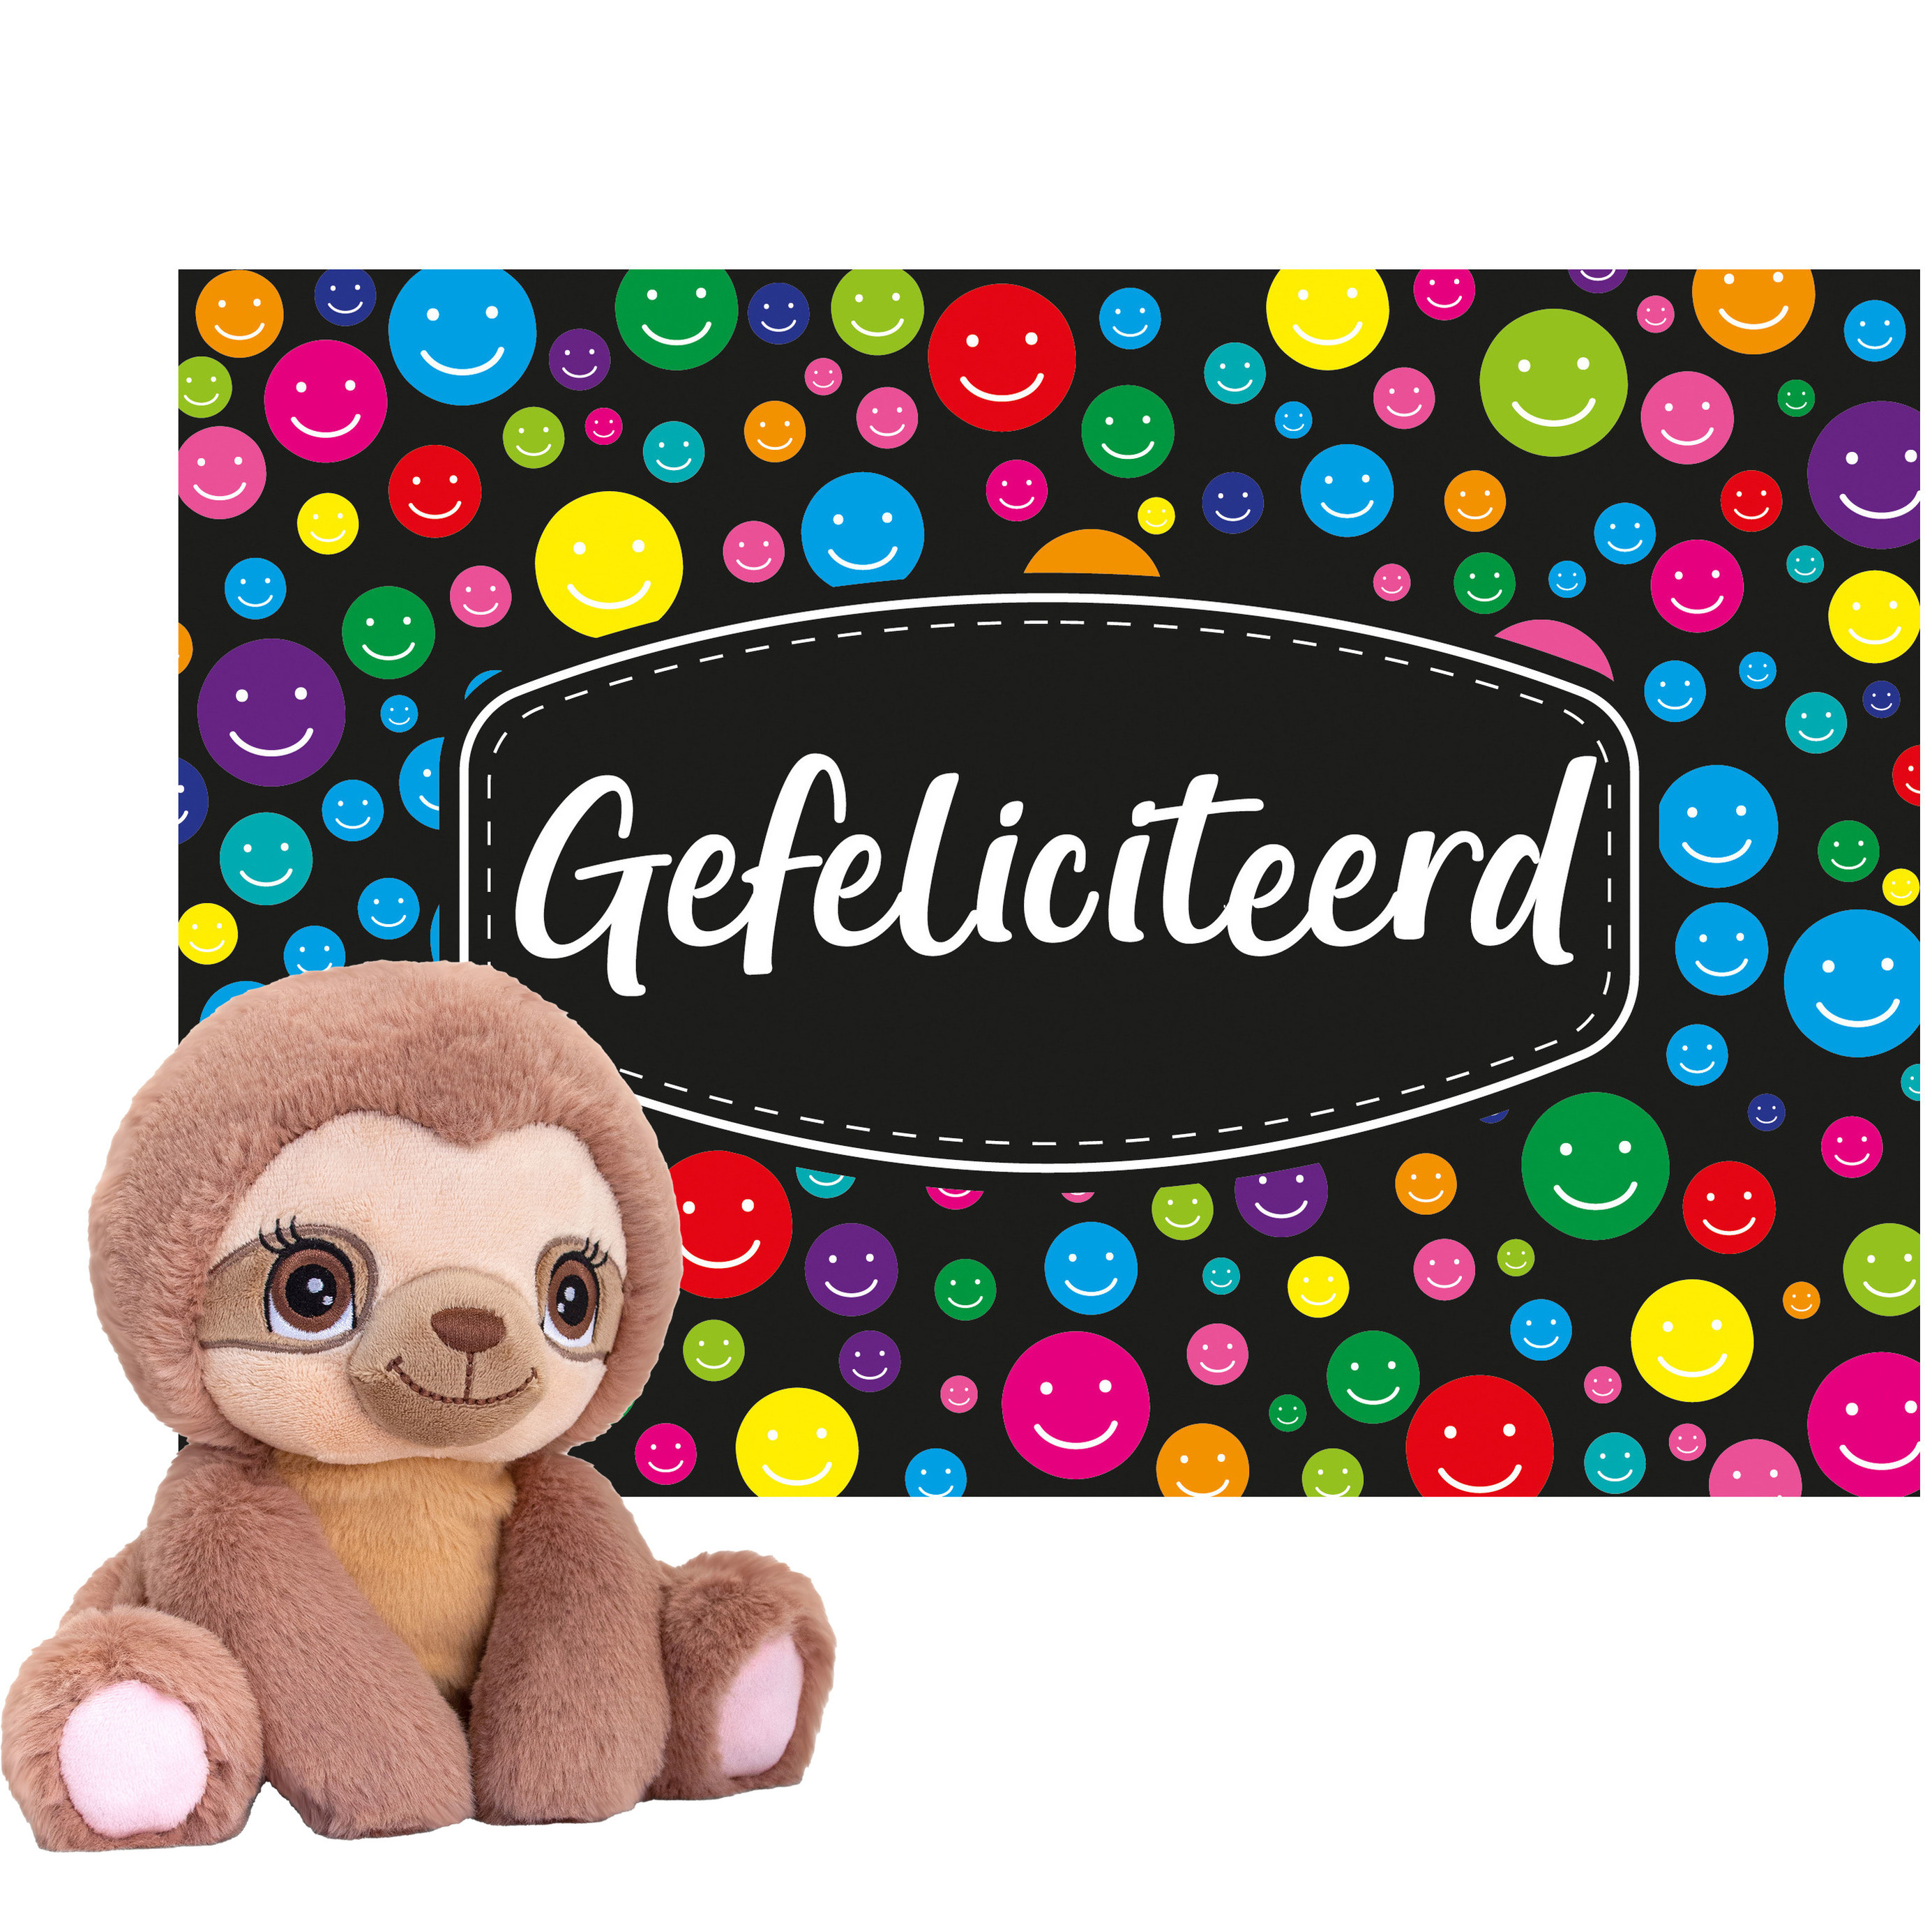 Keel toys Cadeaukaart Gefeliciteerd met knuffeldier luiaard 16 cm